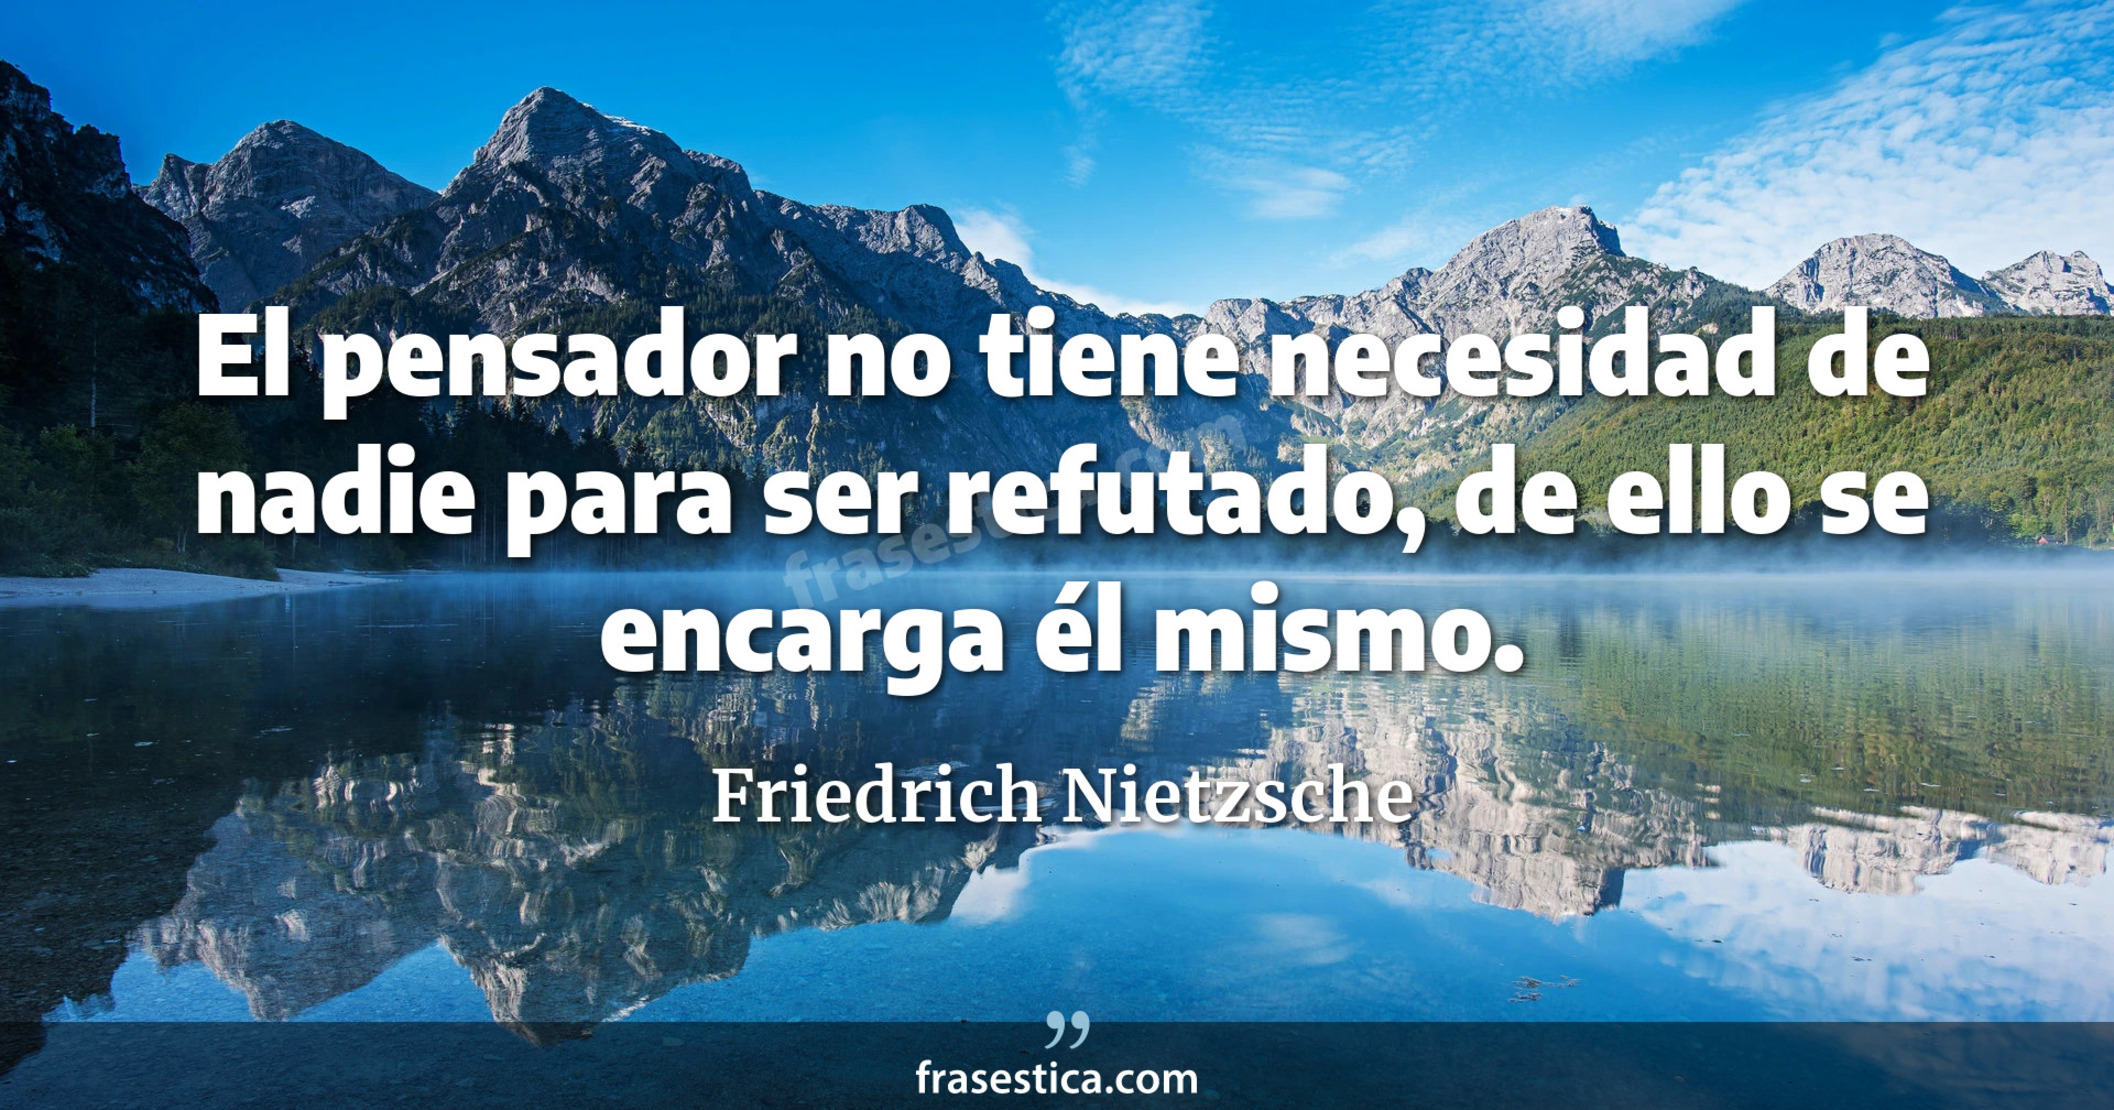 El pensador no tiene necesidad de nadie para ser refutado, de ello se encarga él mismo. - Friedrich Nietzsche